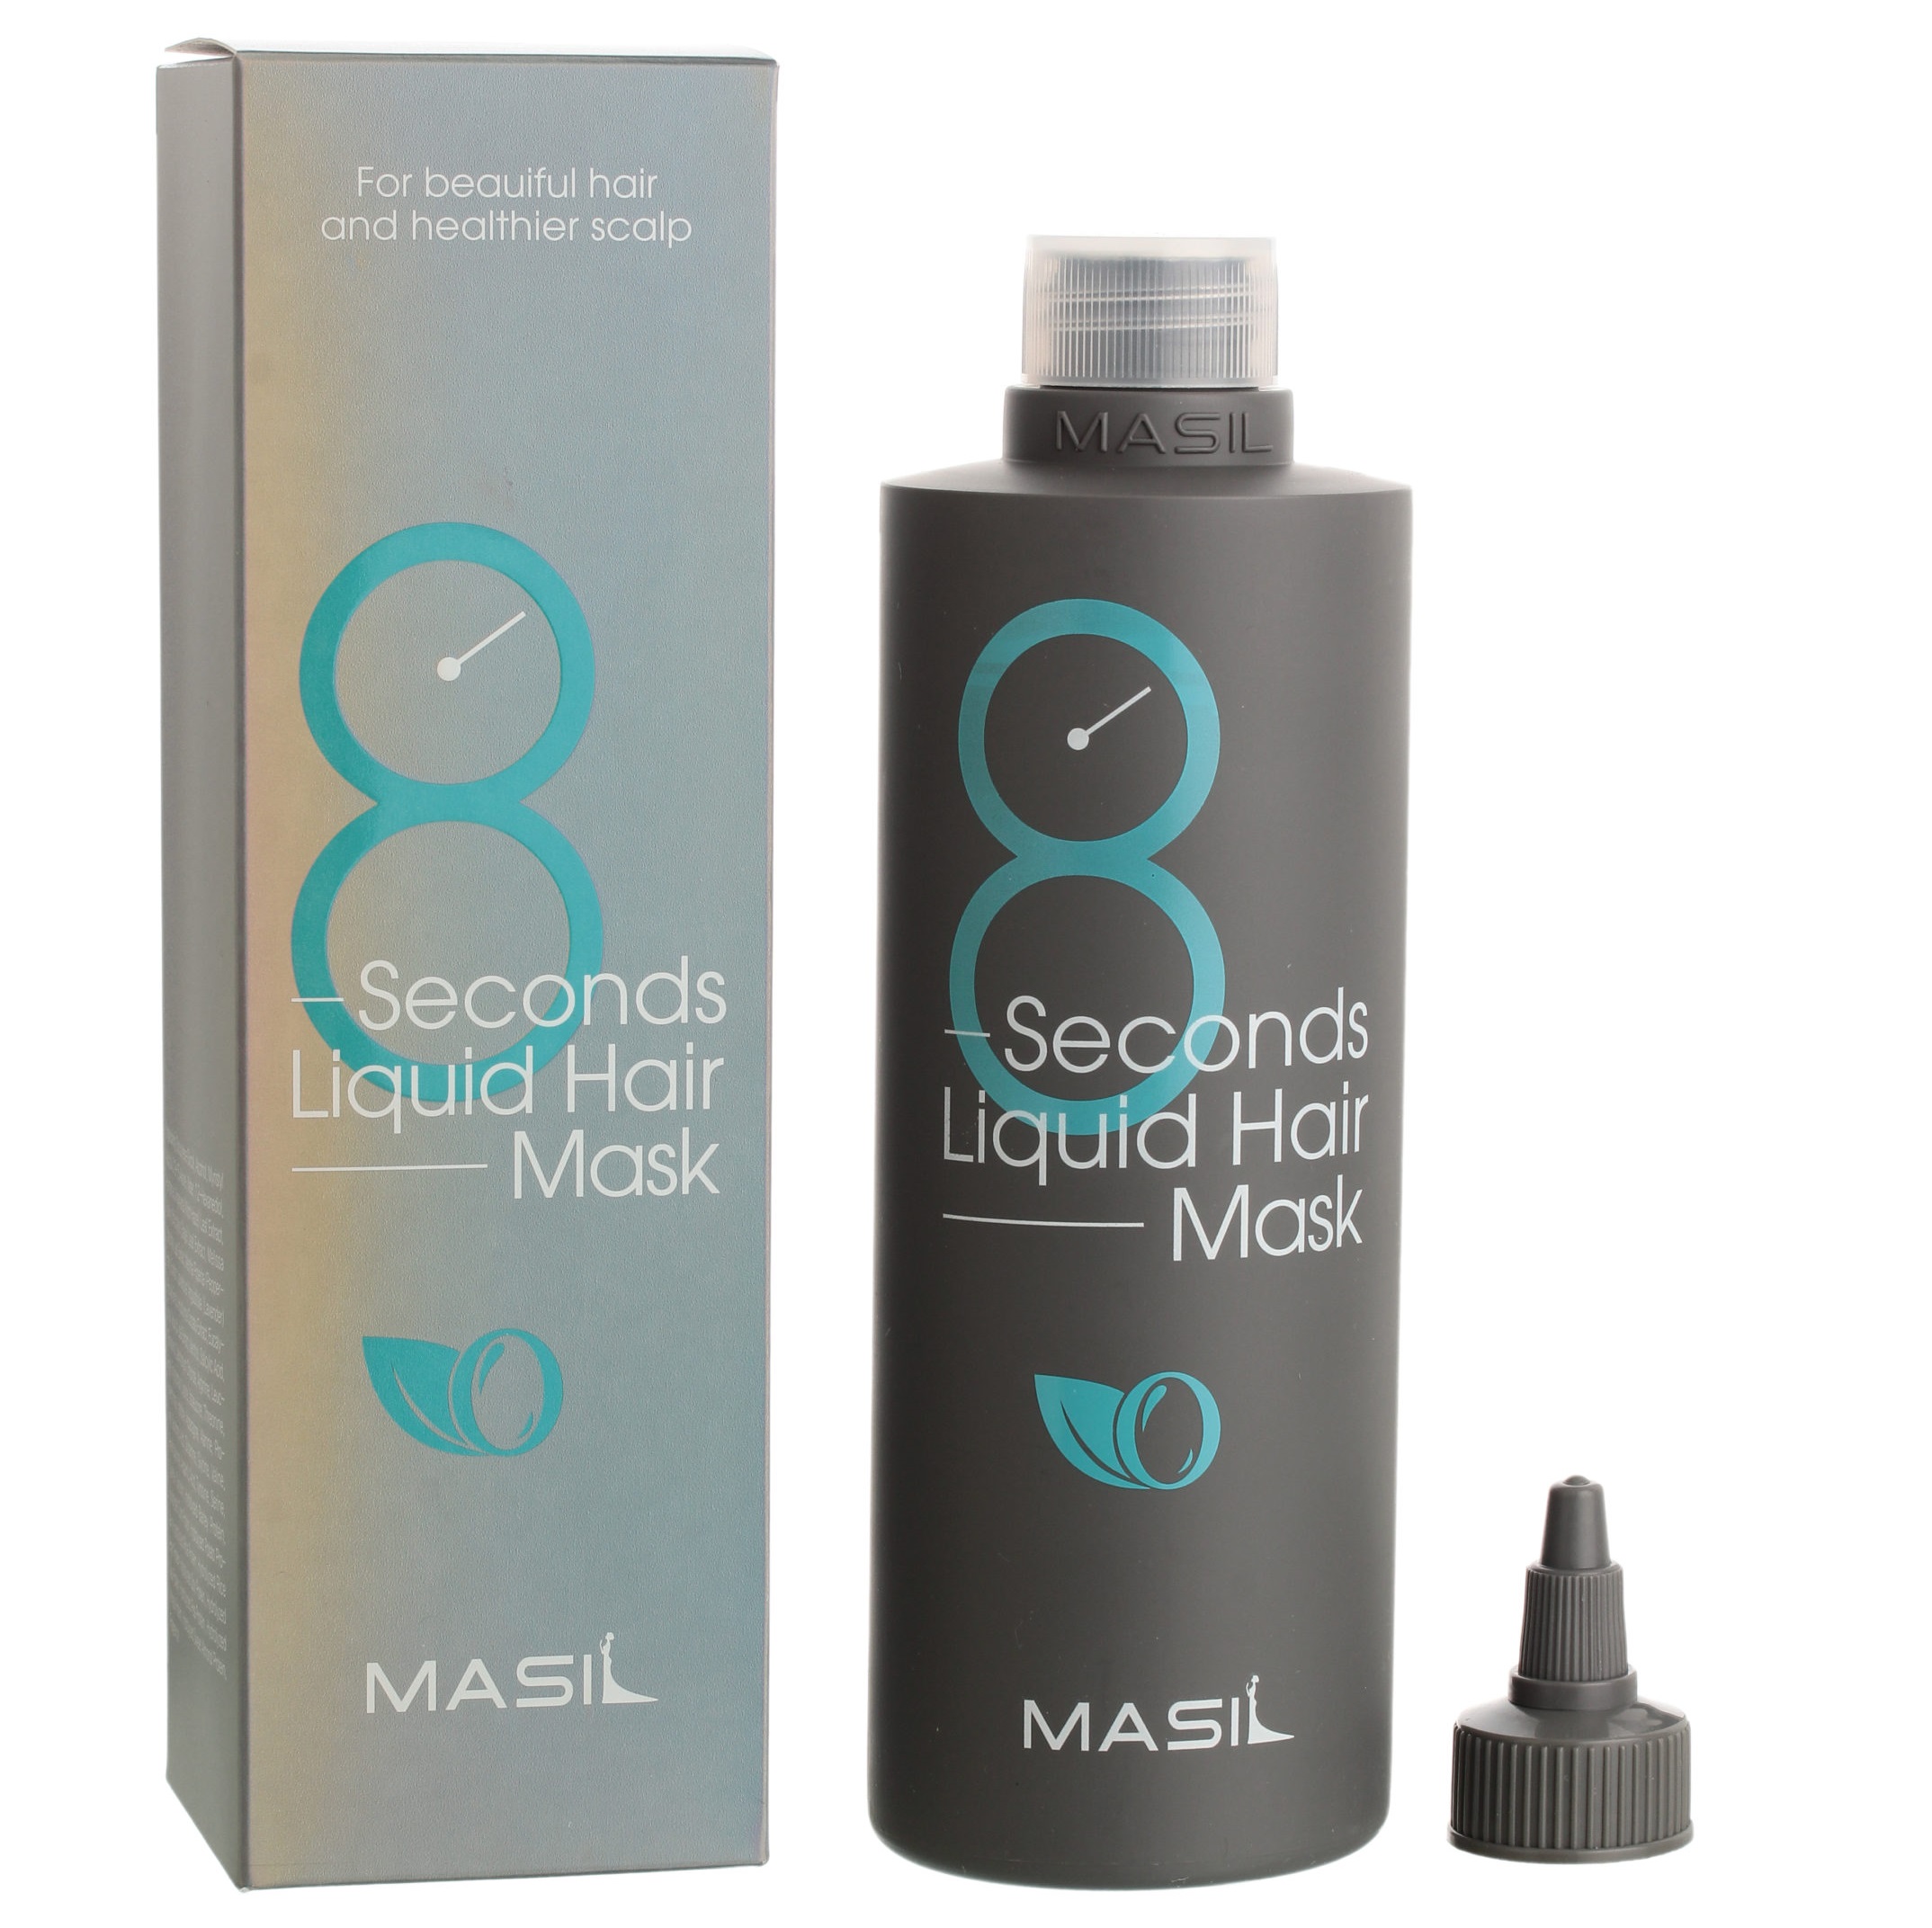 MASIL, Интенсивная маска для поврежденных волос 8 Seconds Salon Liquid Hair Mask, 350 мл.